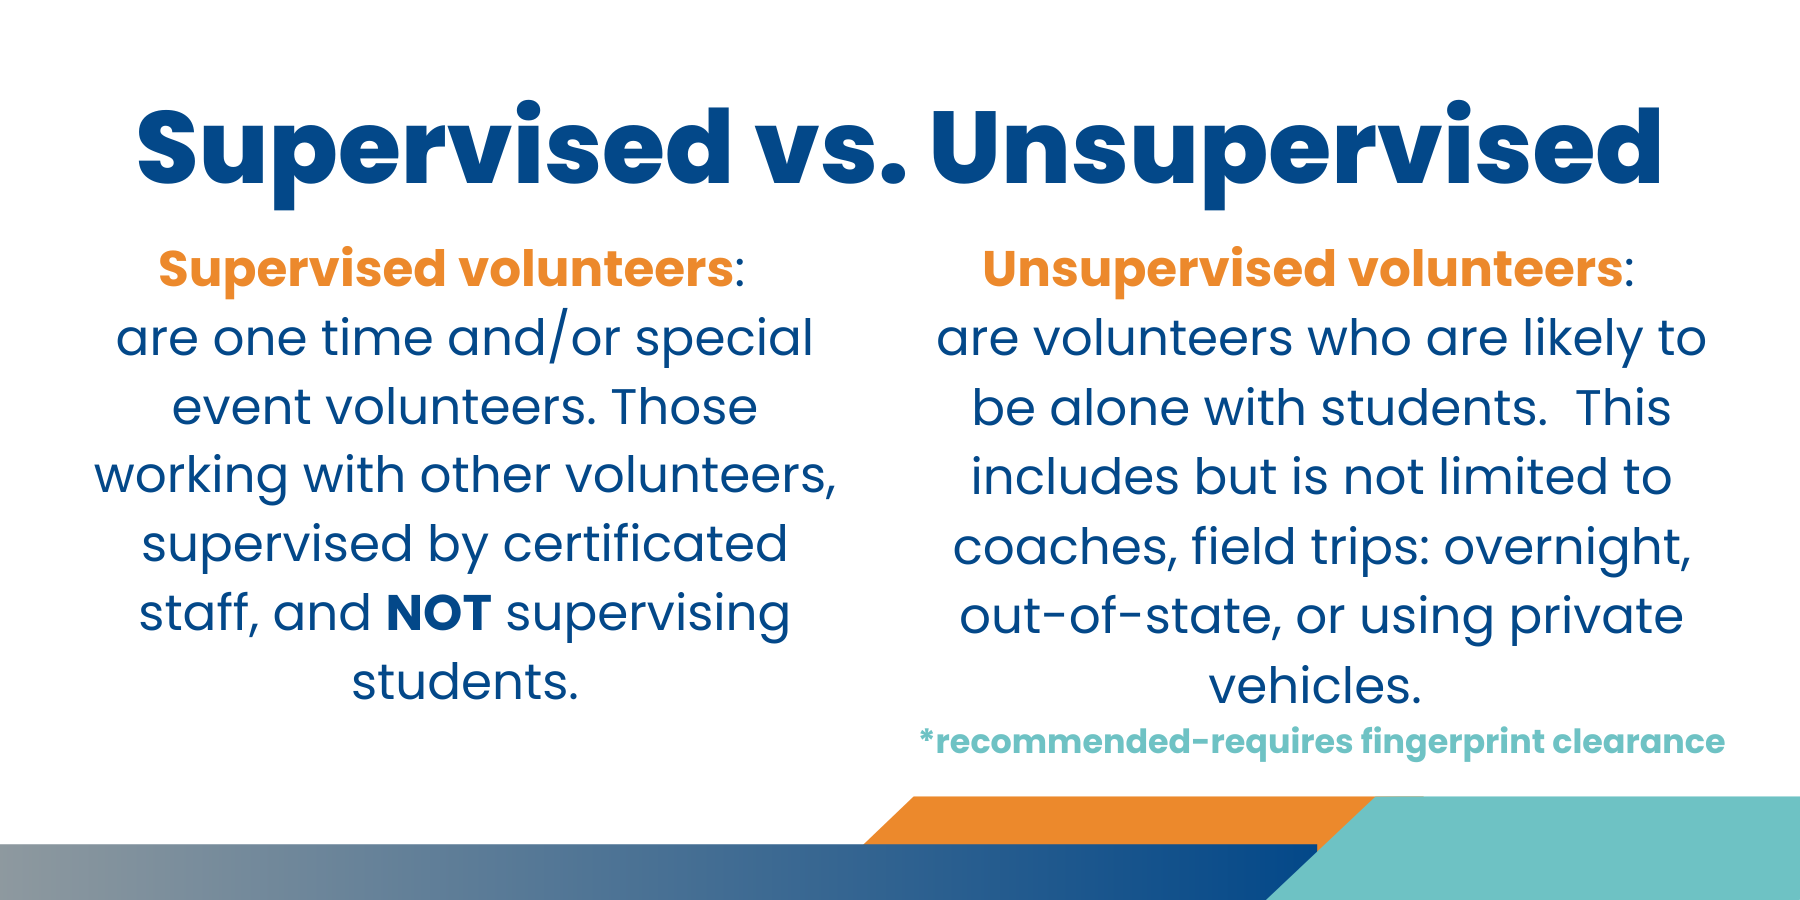 Supervised versus unsupervised volunteers